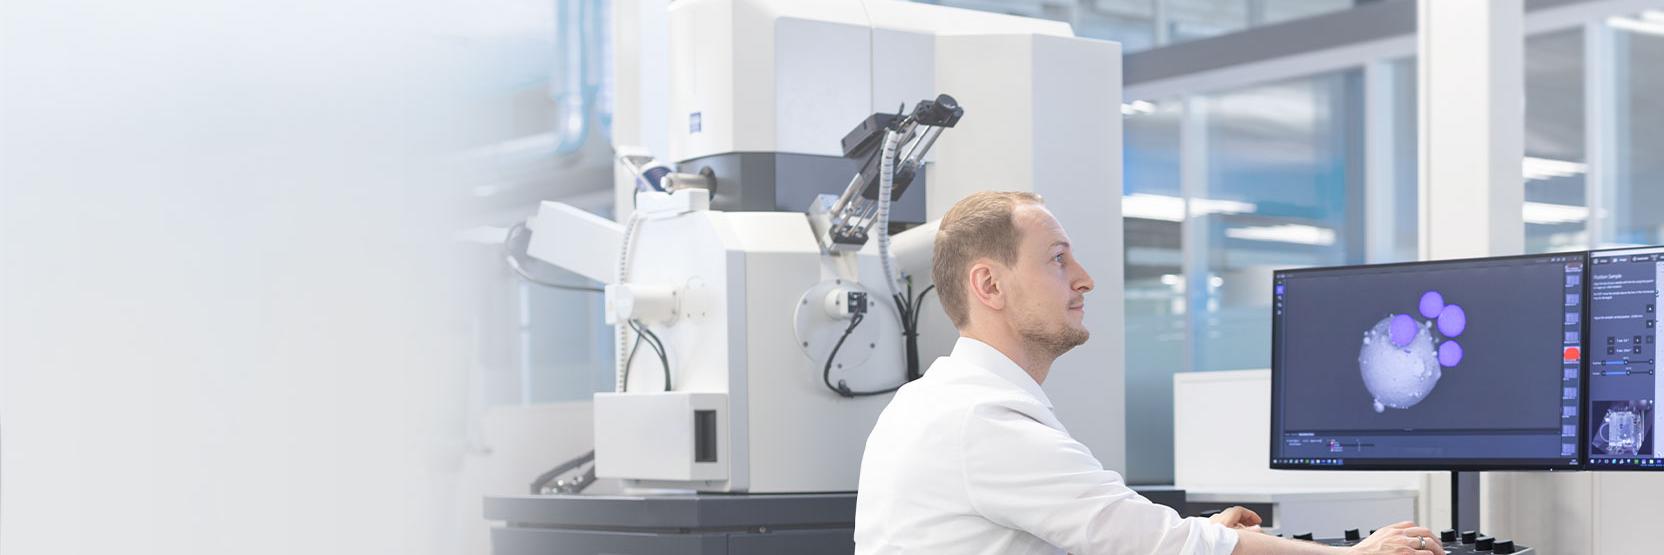 扫描电子显微镜和离子显微镜——用于科学和日常工作研究